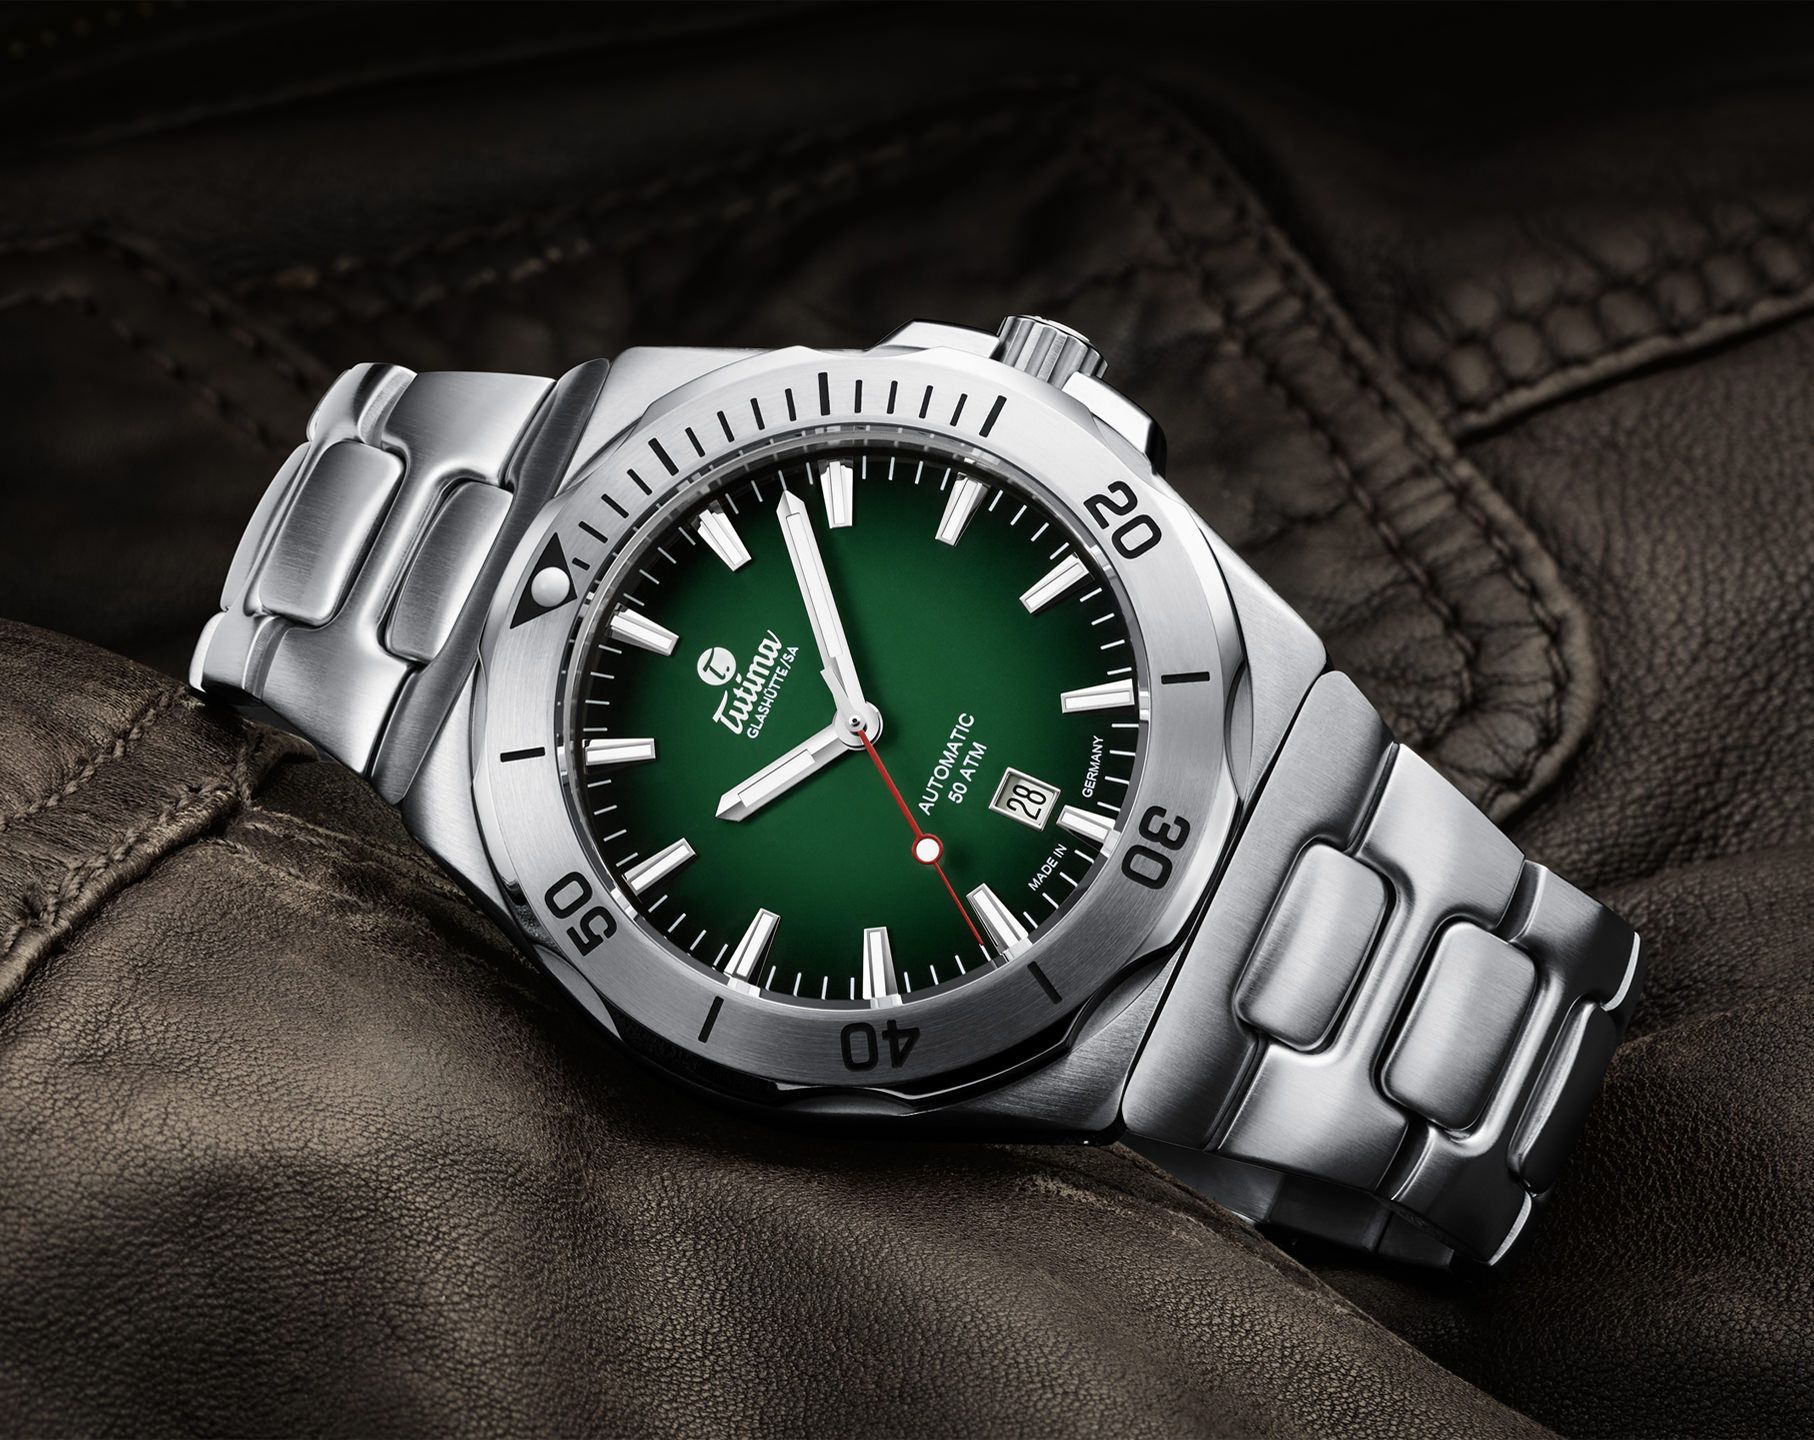 Tutima Glashütte Seven Seas S 44 mm Watch in Green Dial For Men - 2